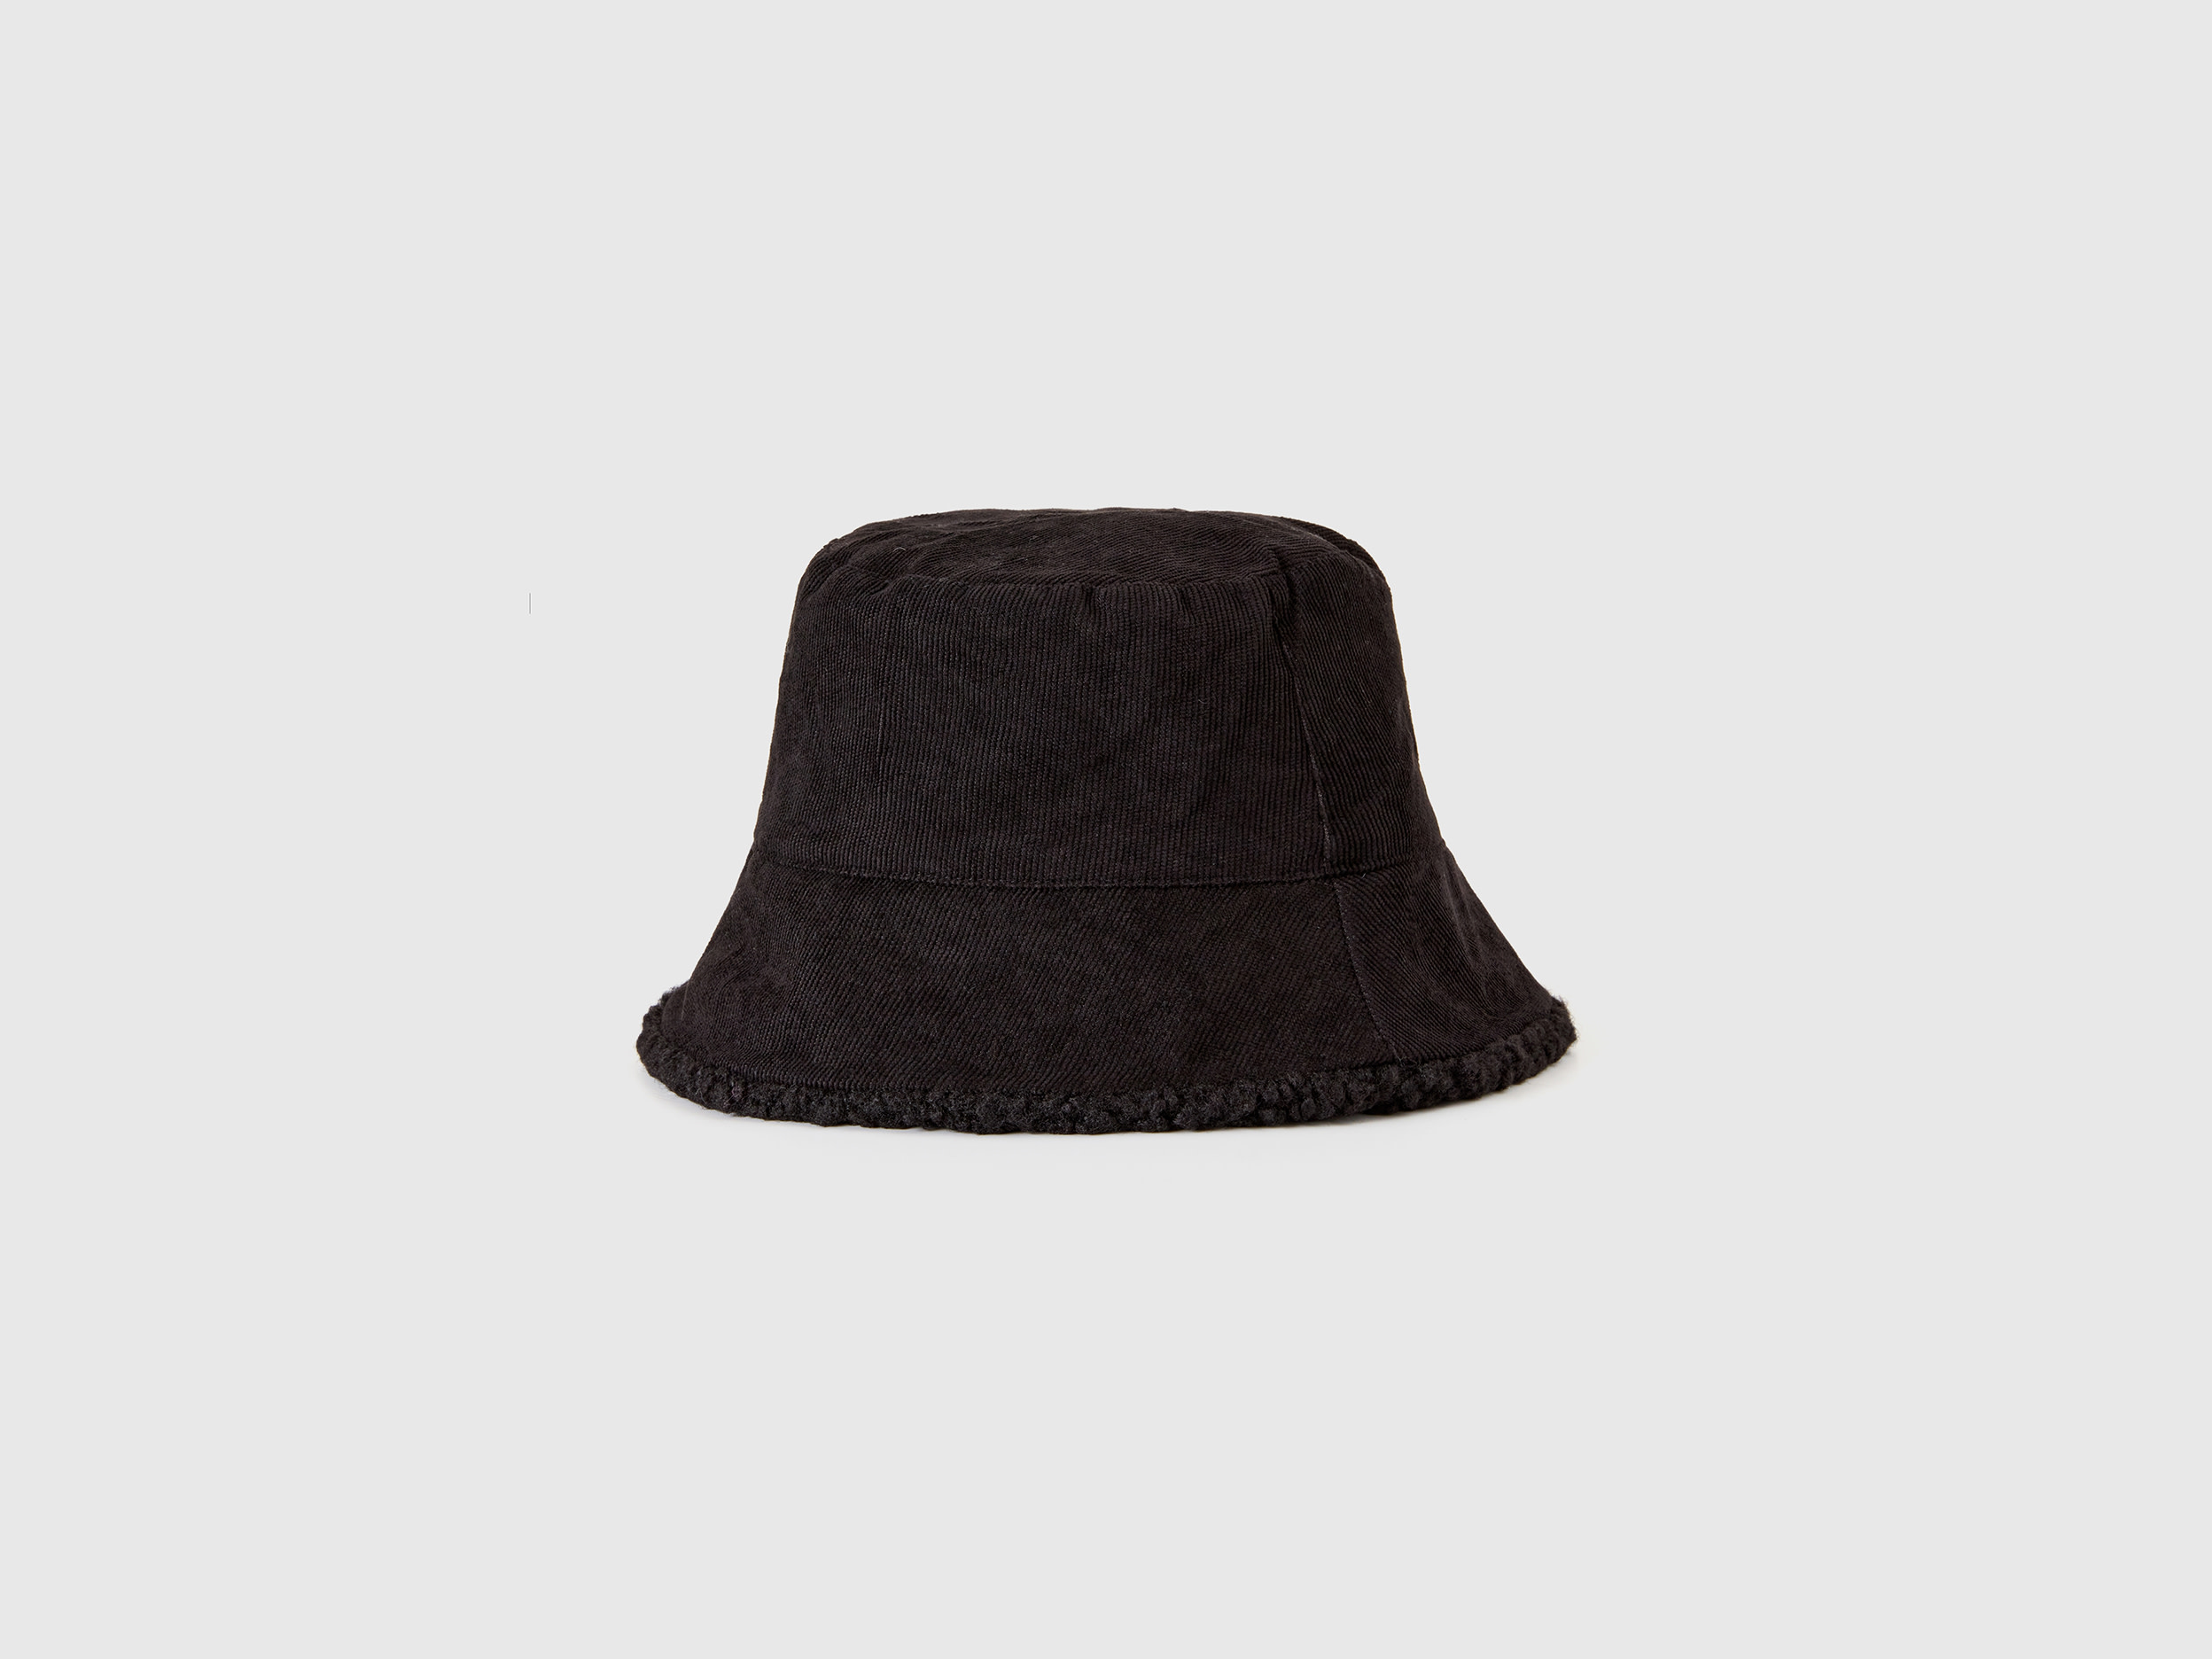 Benetton, Reversible Bucket Hat, size L, Black, Women